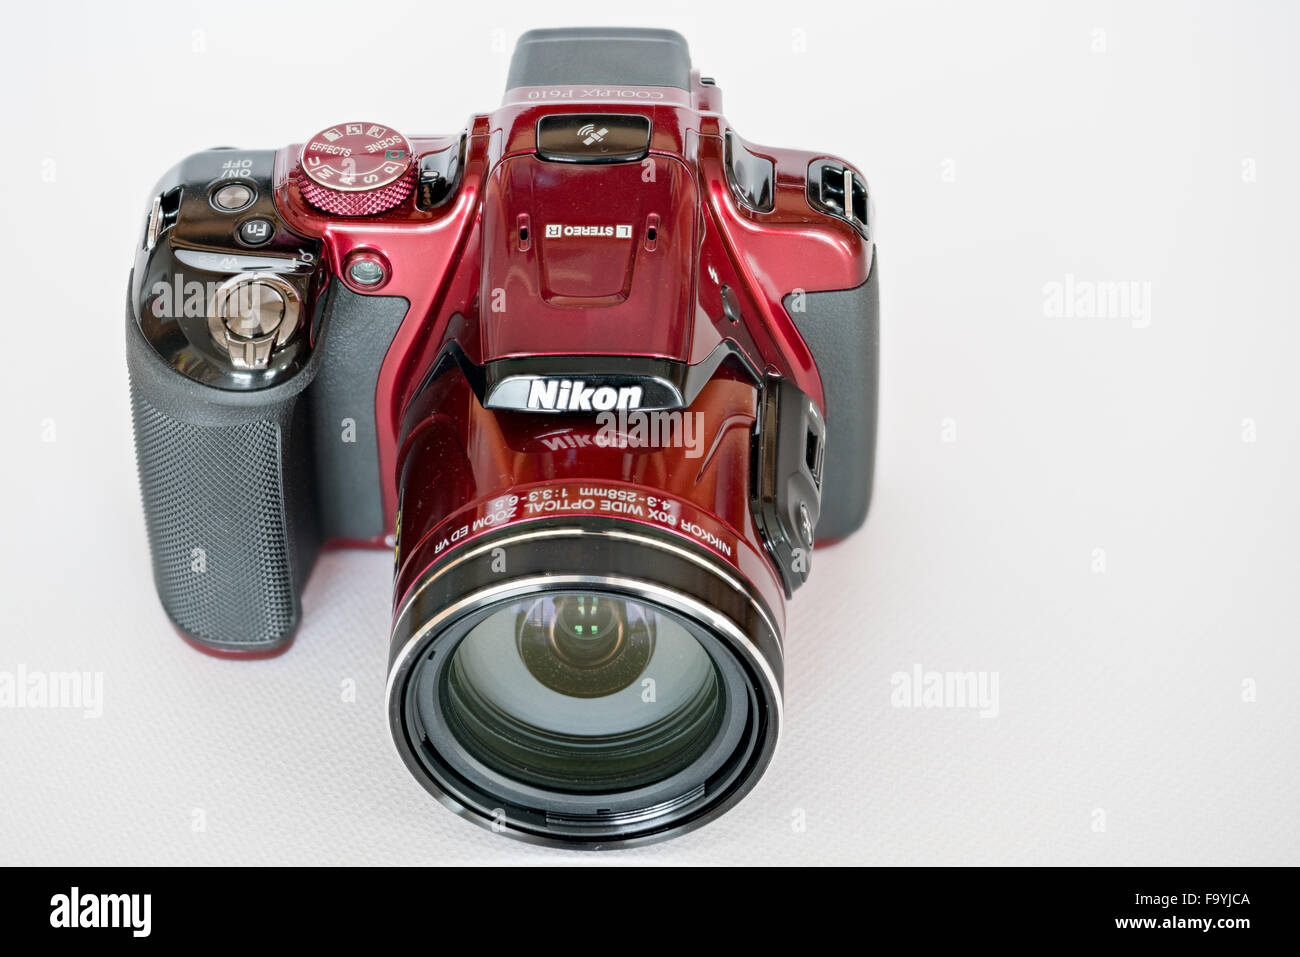 Nikon Coolpix P610 Camera Stock Photo - Alamy